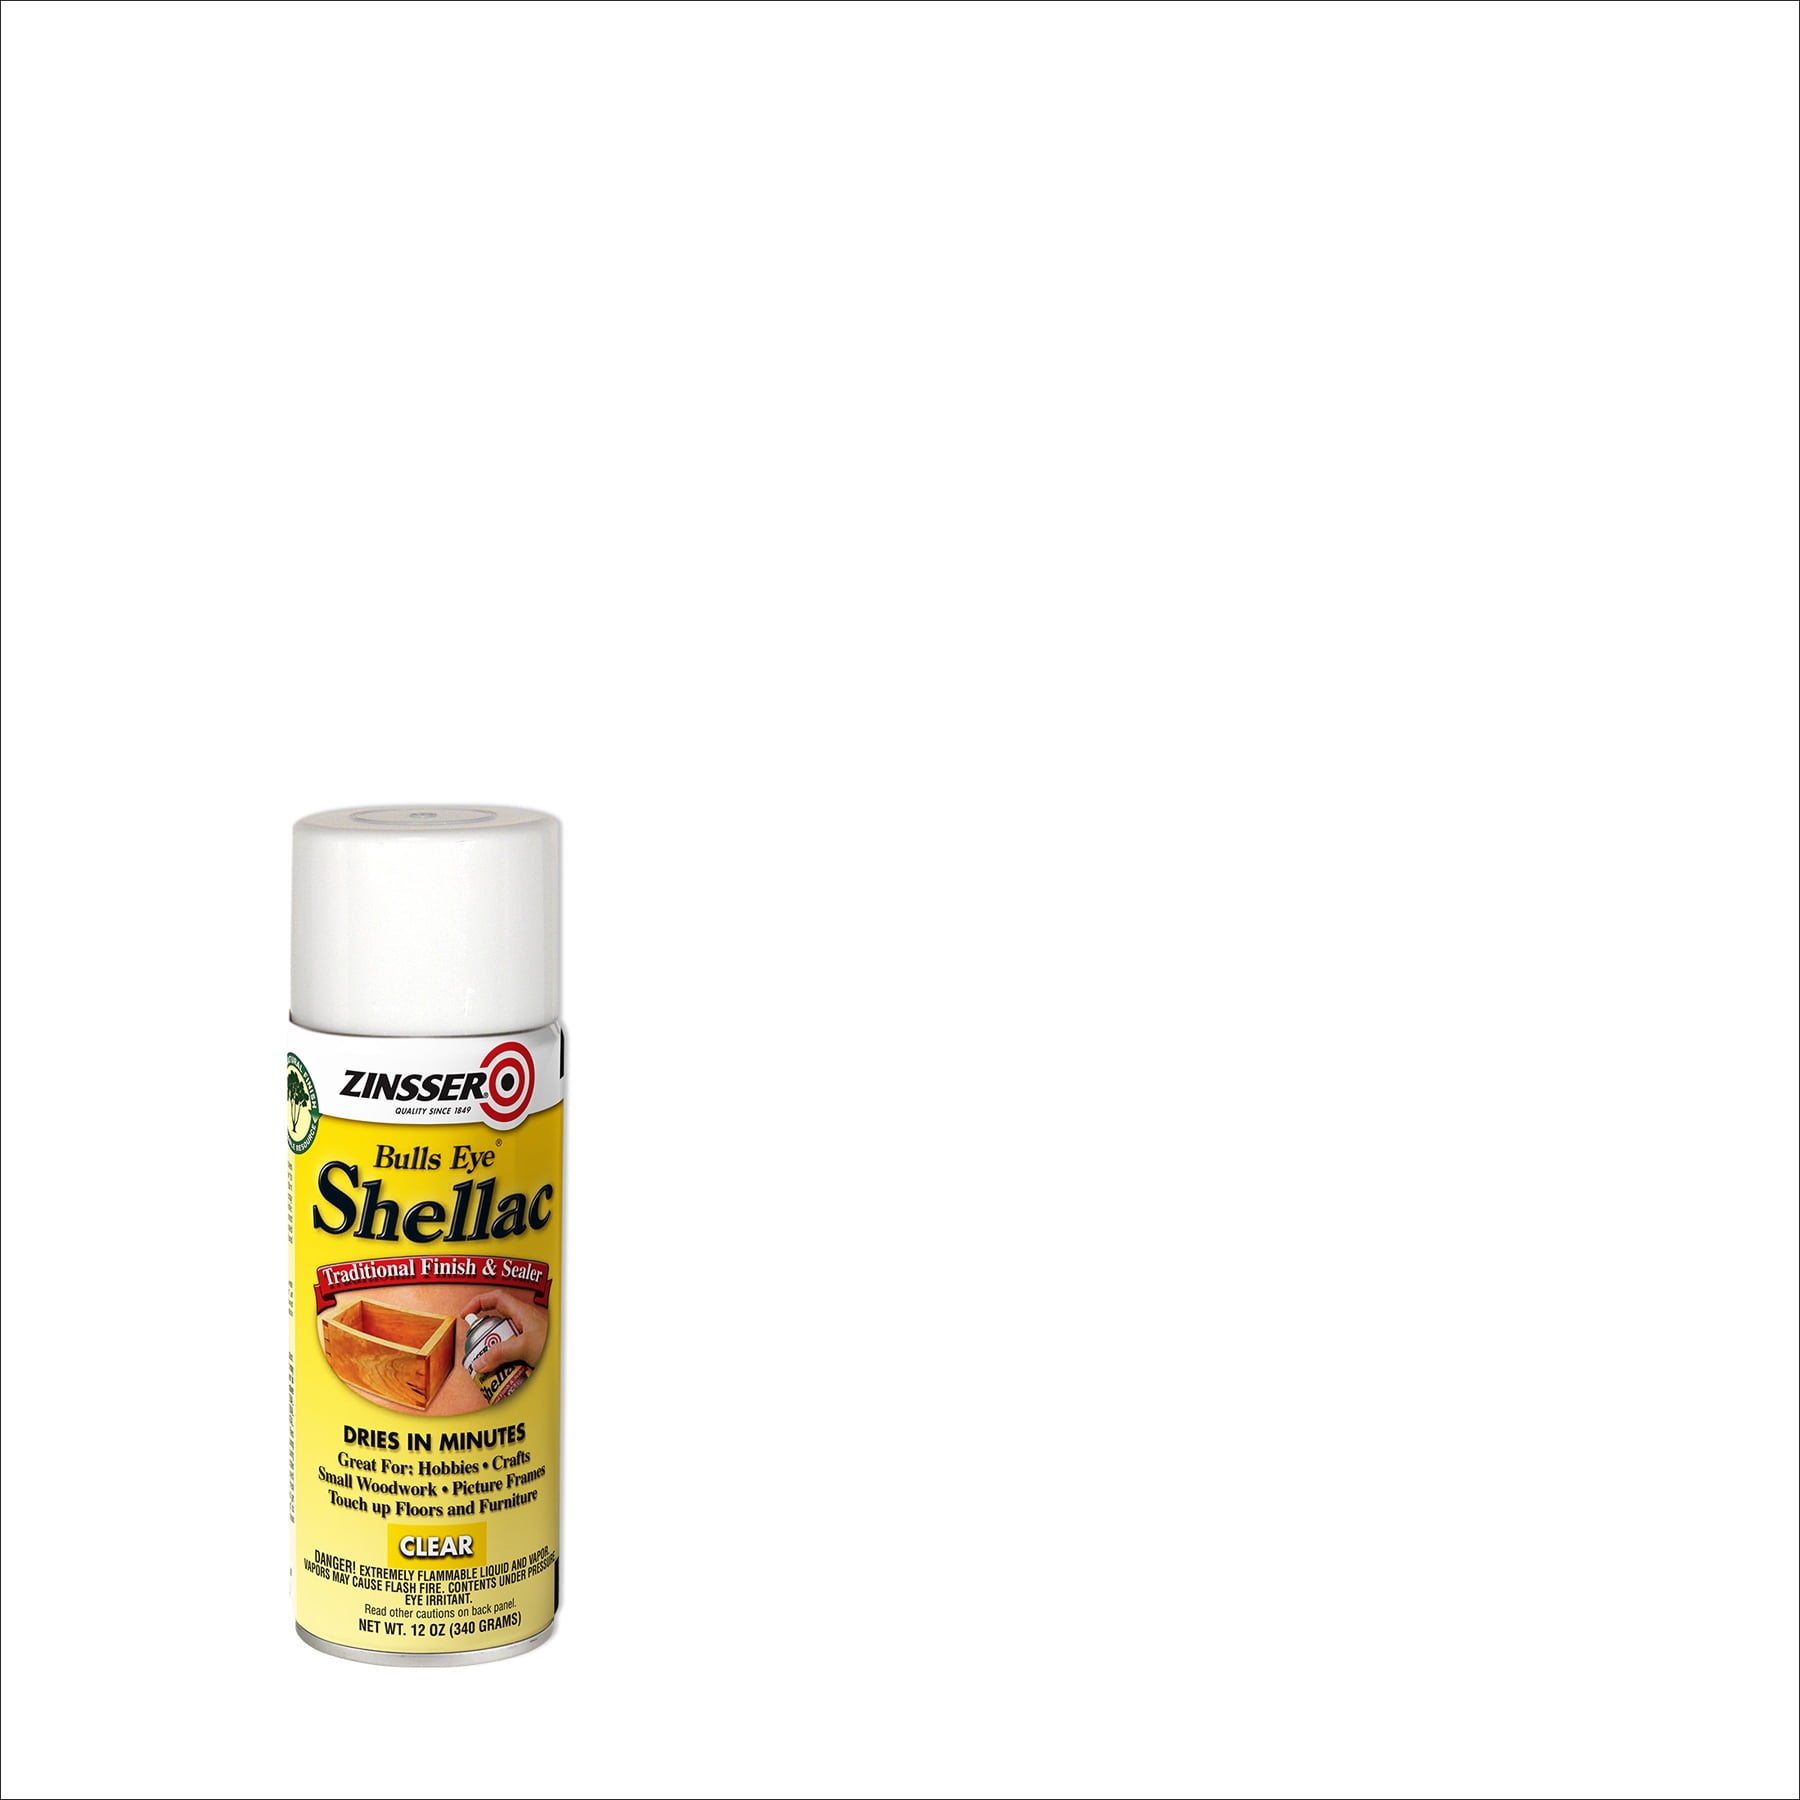 Zinsser Bulls Eye Shellac Traditional Finish & Sealer Spray 12 oz. Aerosol Can, Clear